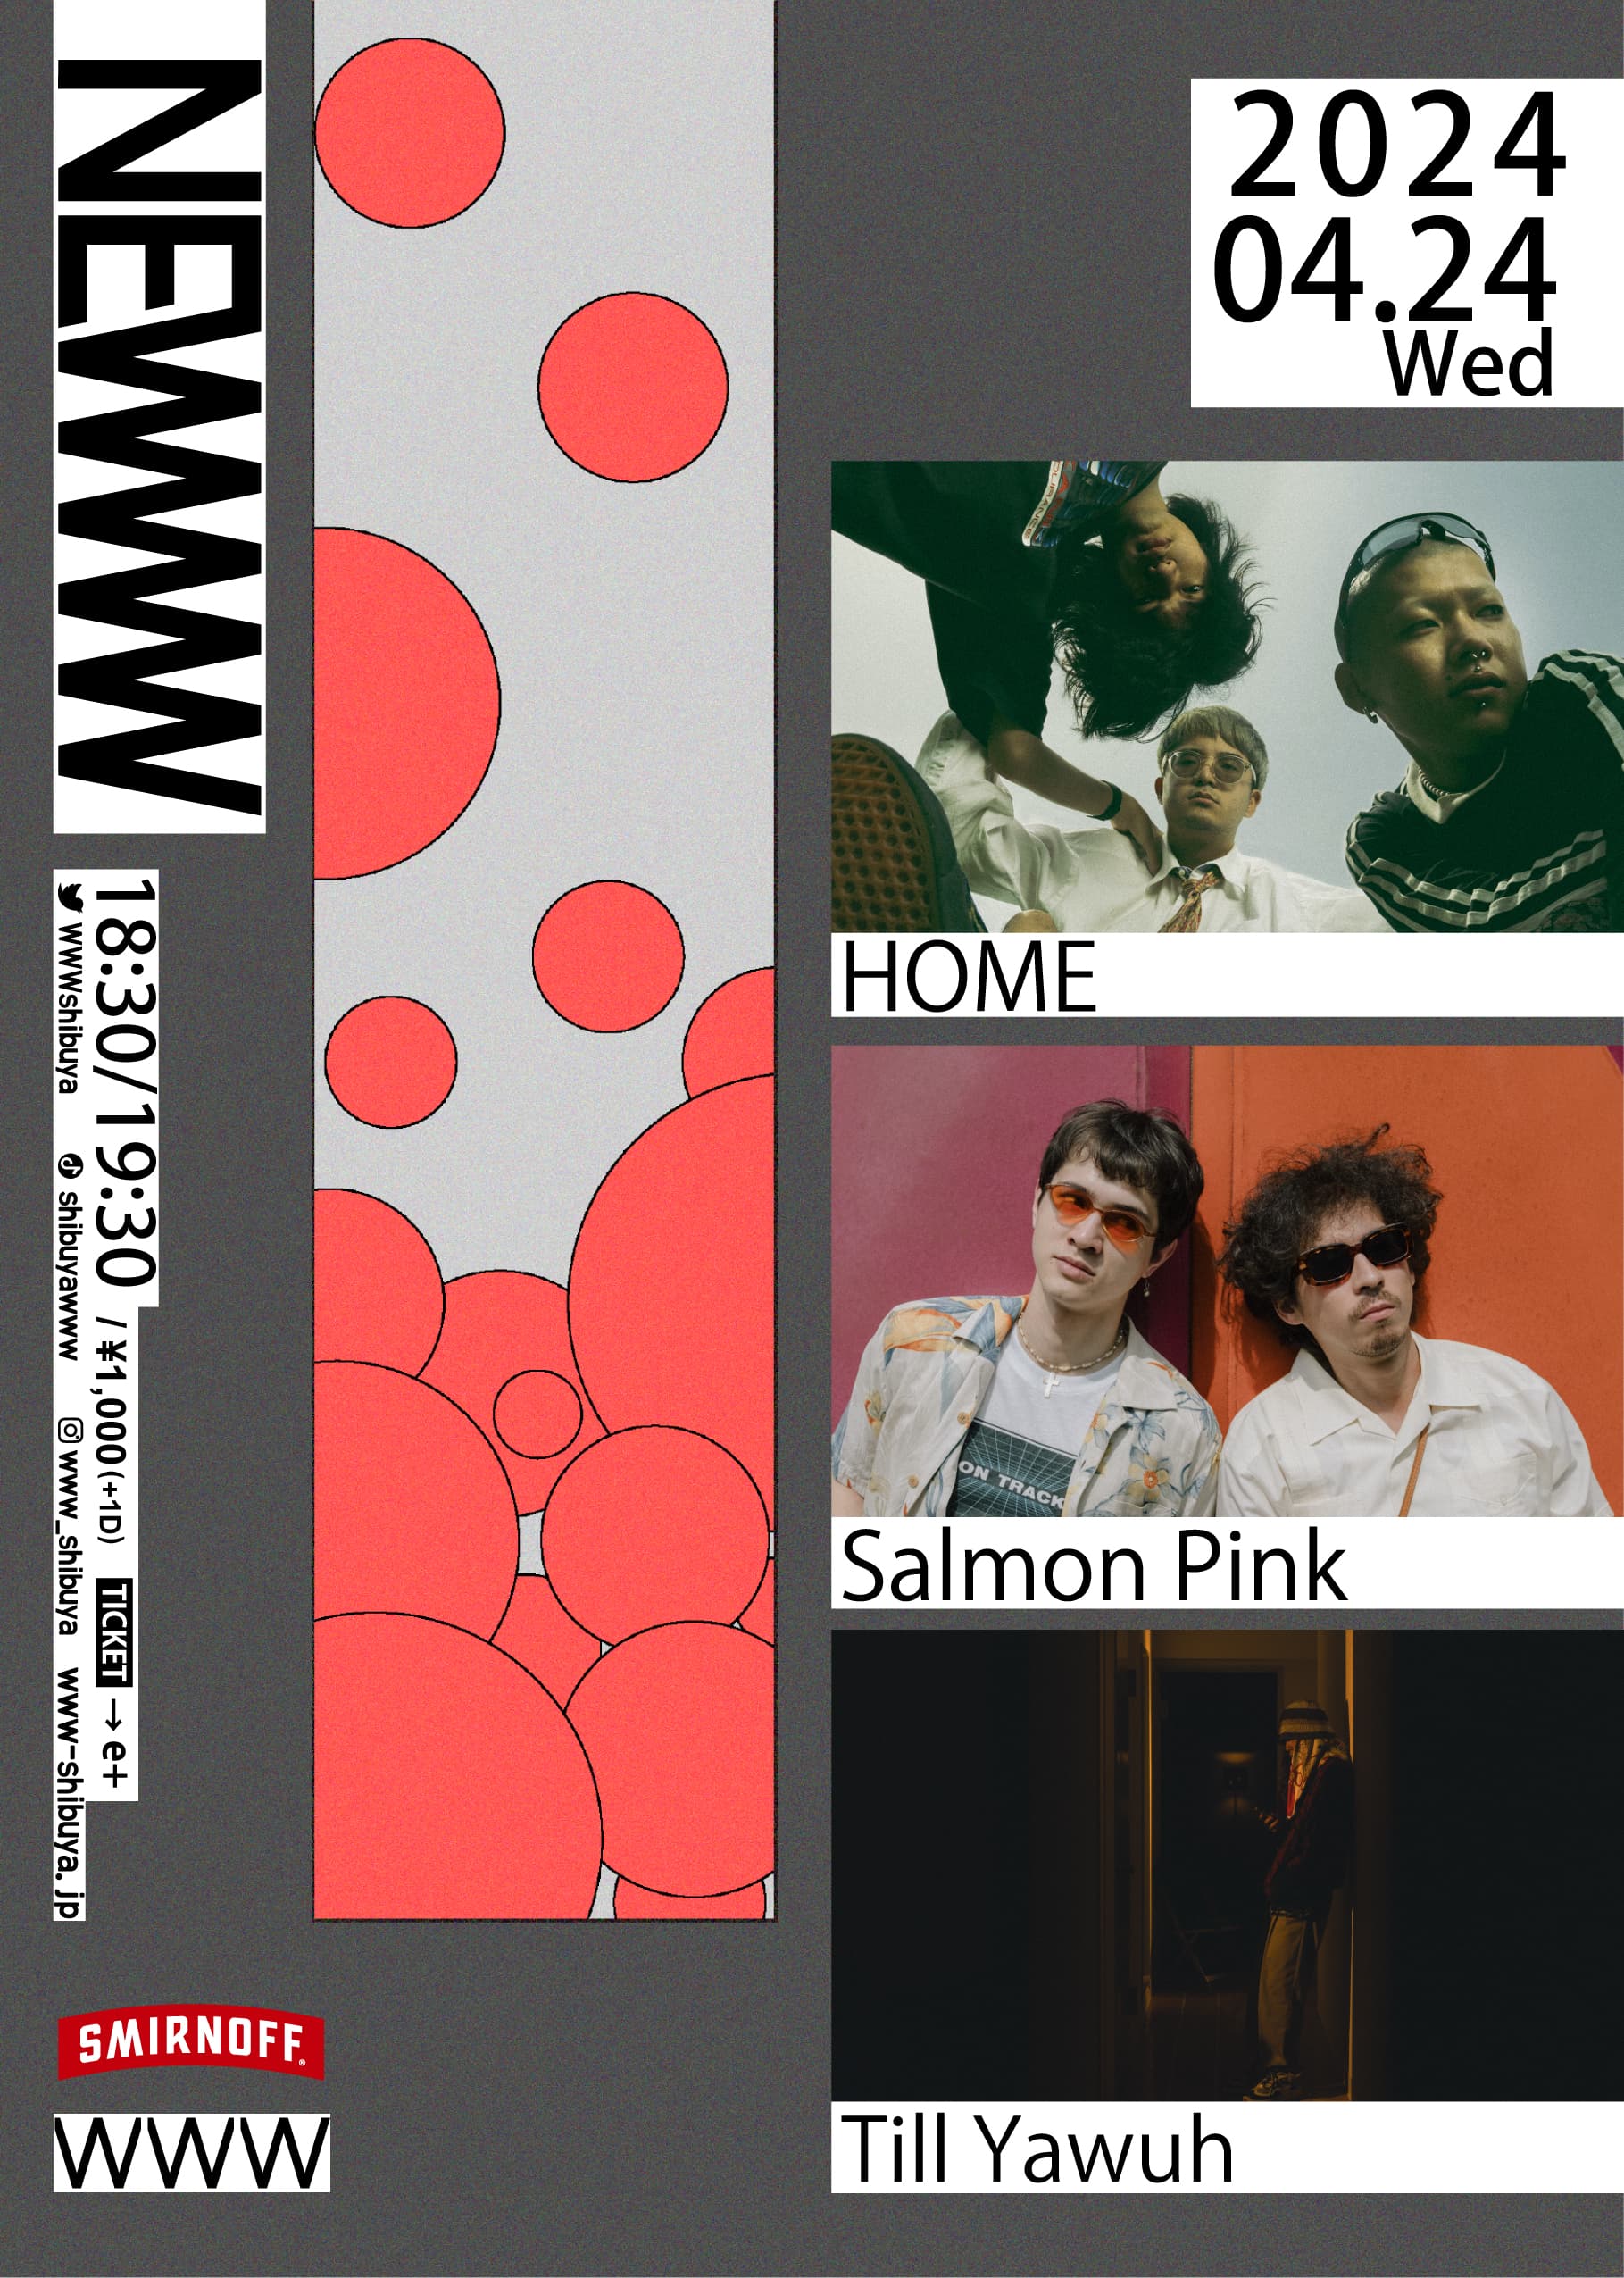 HOME / Salmon Pink / Till Yawuh